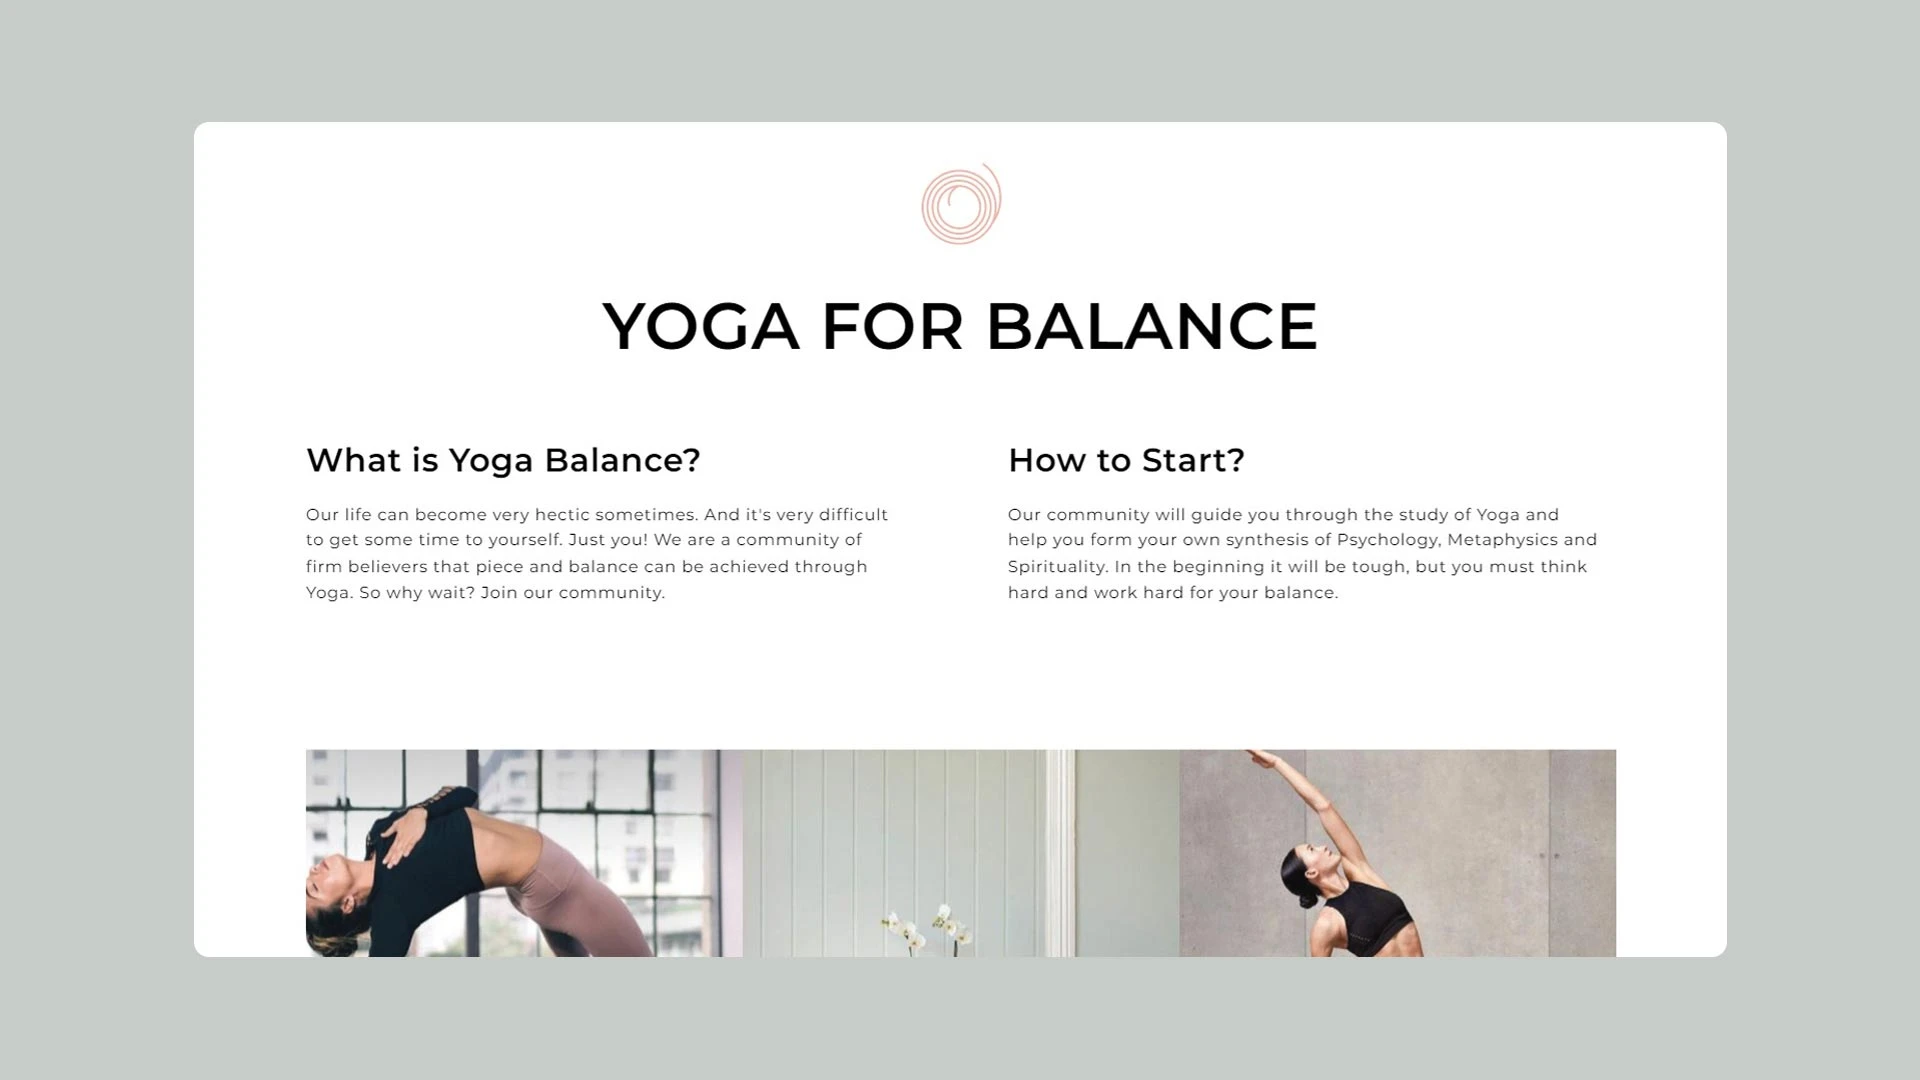 популярные вопросы в шаблоне Yogabalance